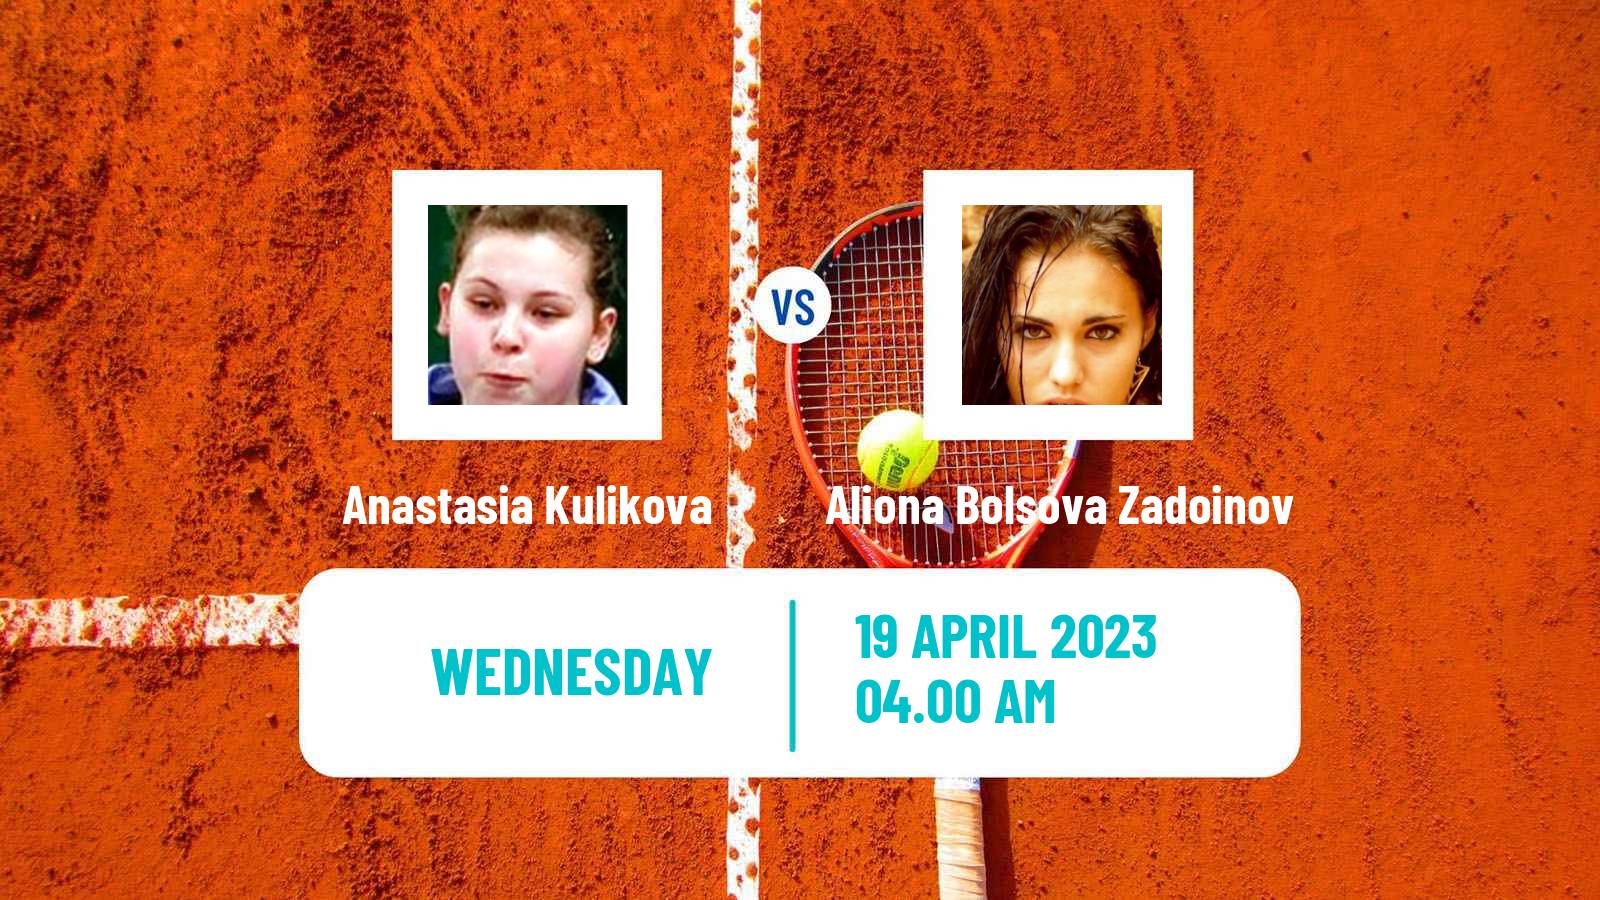 Tennis ITF Tournaments Anastasia Kulikova - Aliona Bolsova Zadoinov